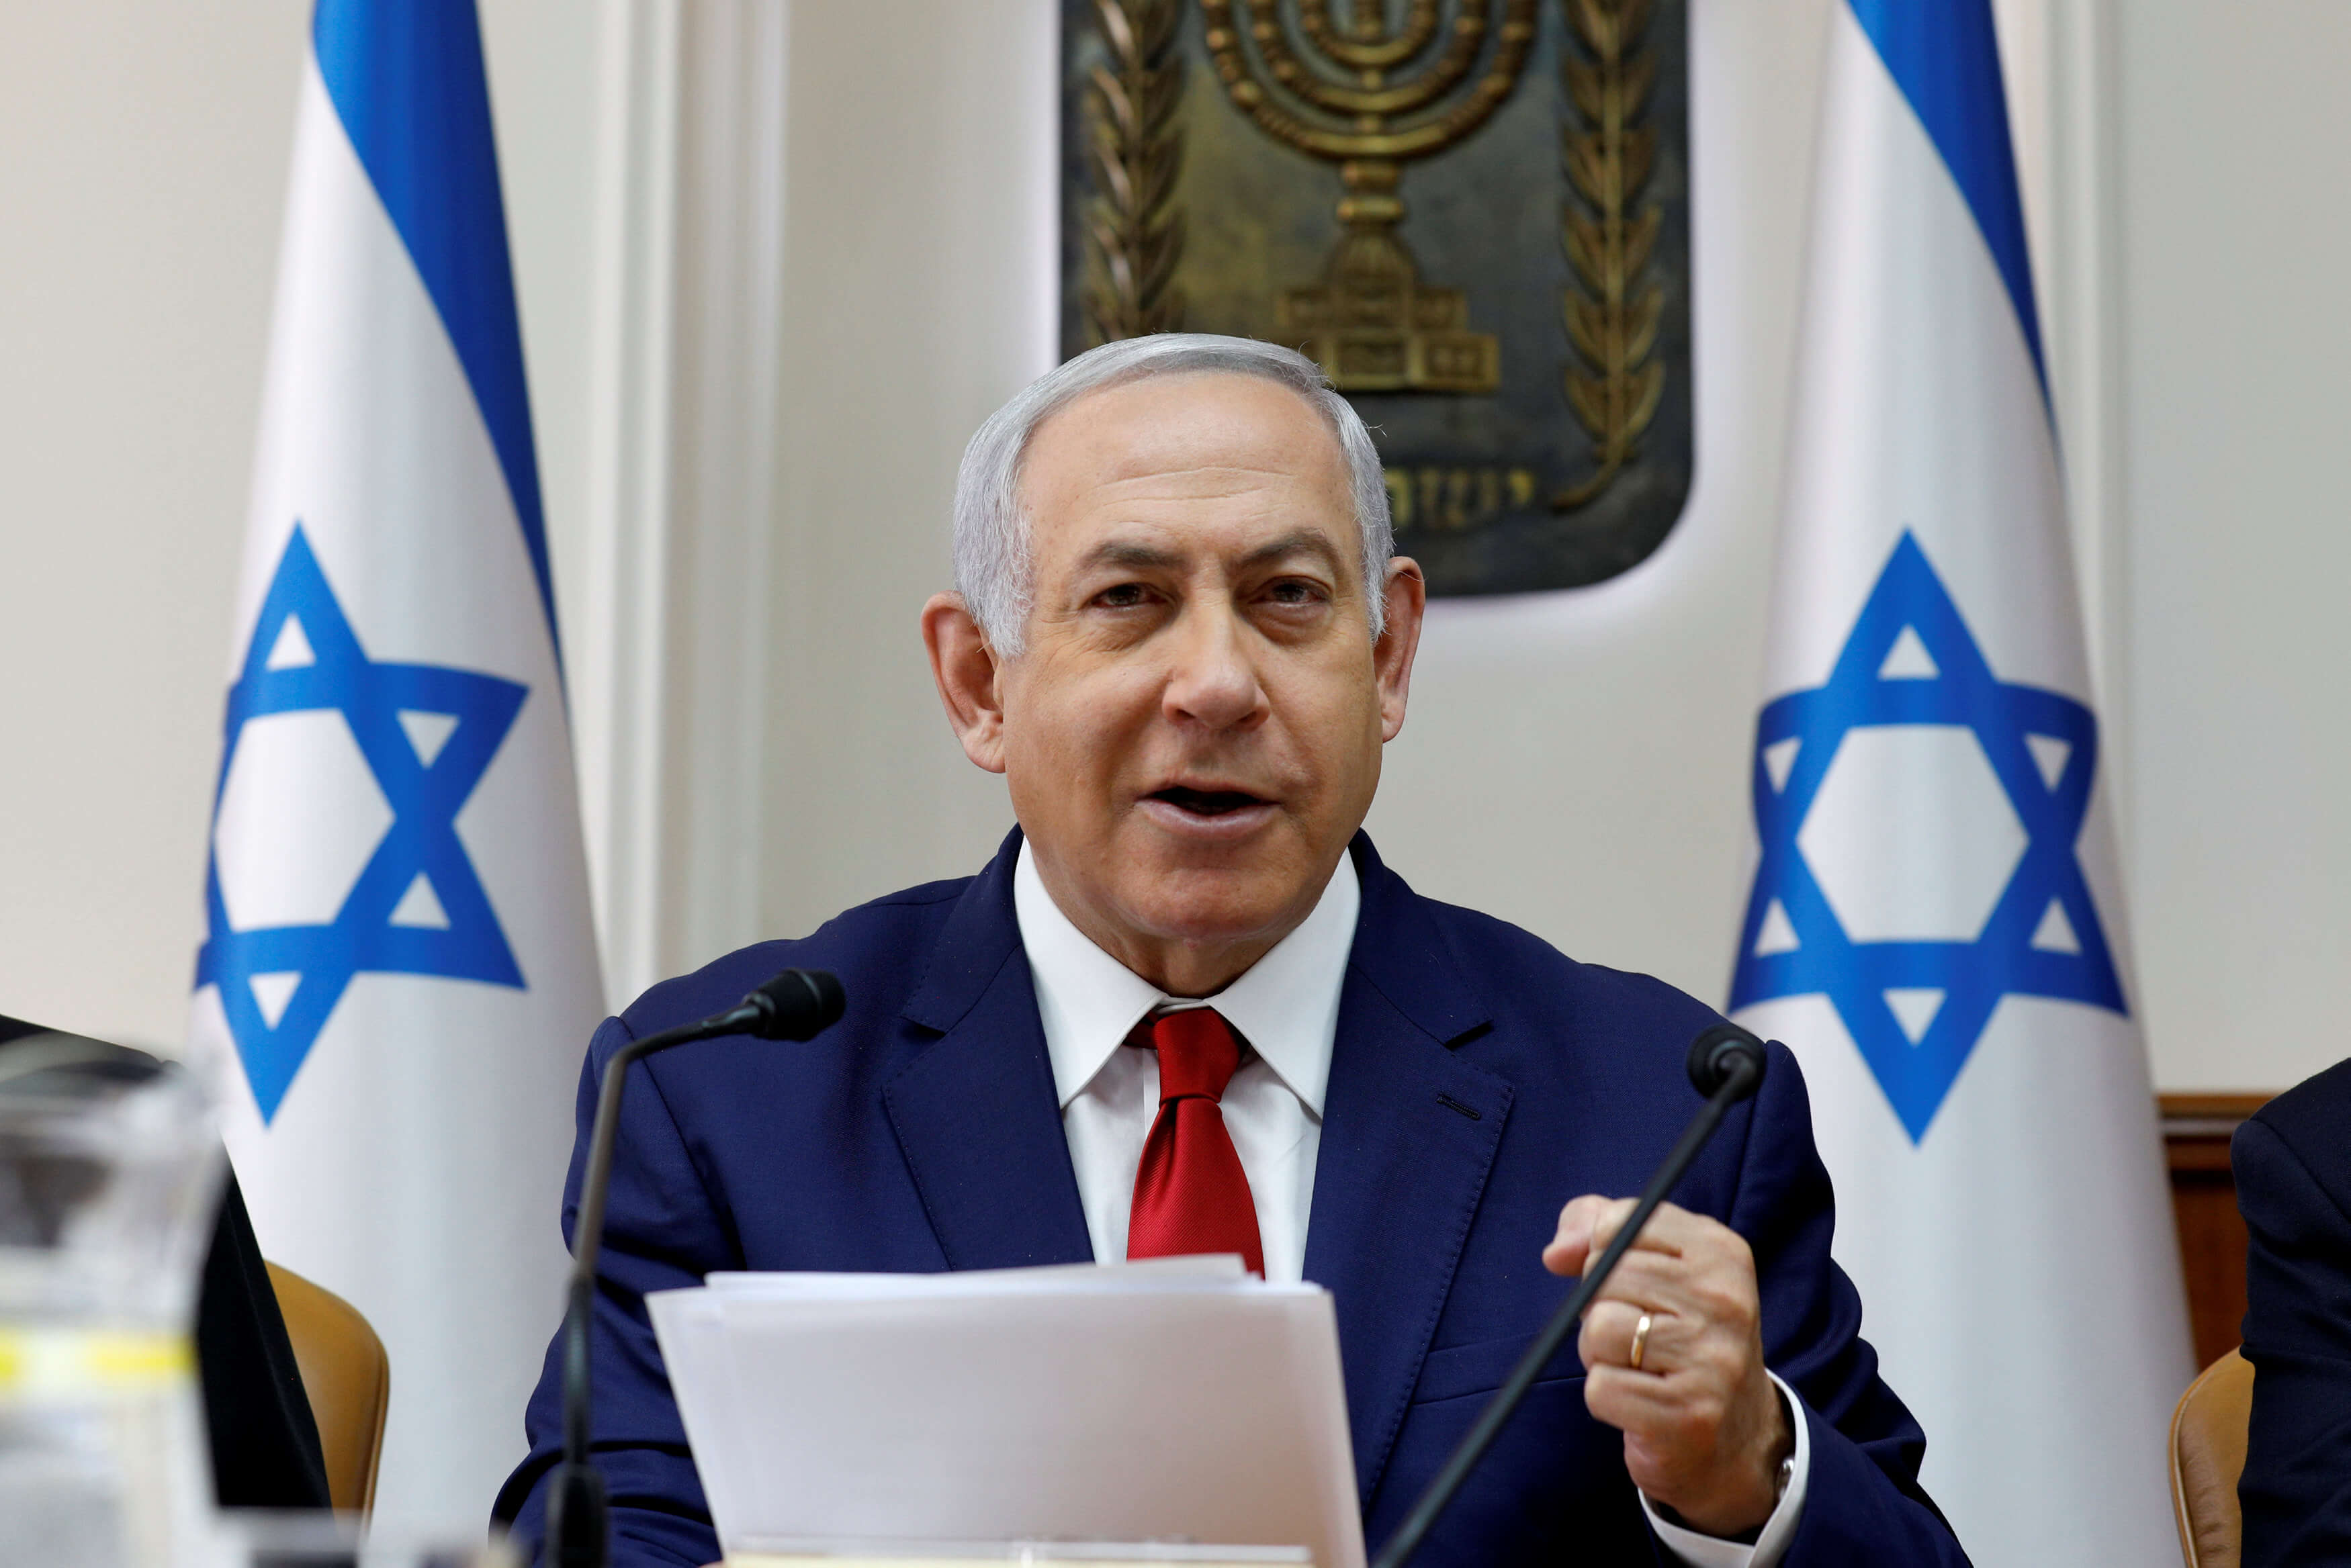 Netanyahu rechaza acusaciones de corrupción